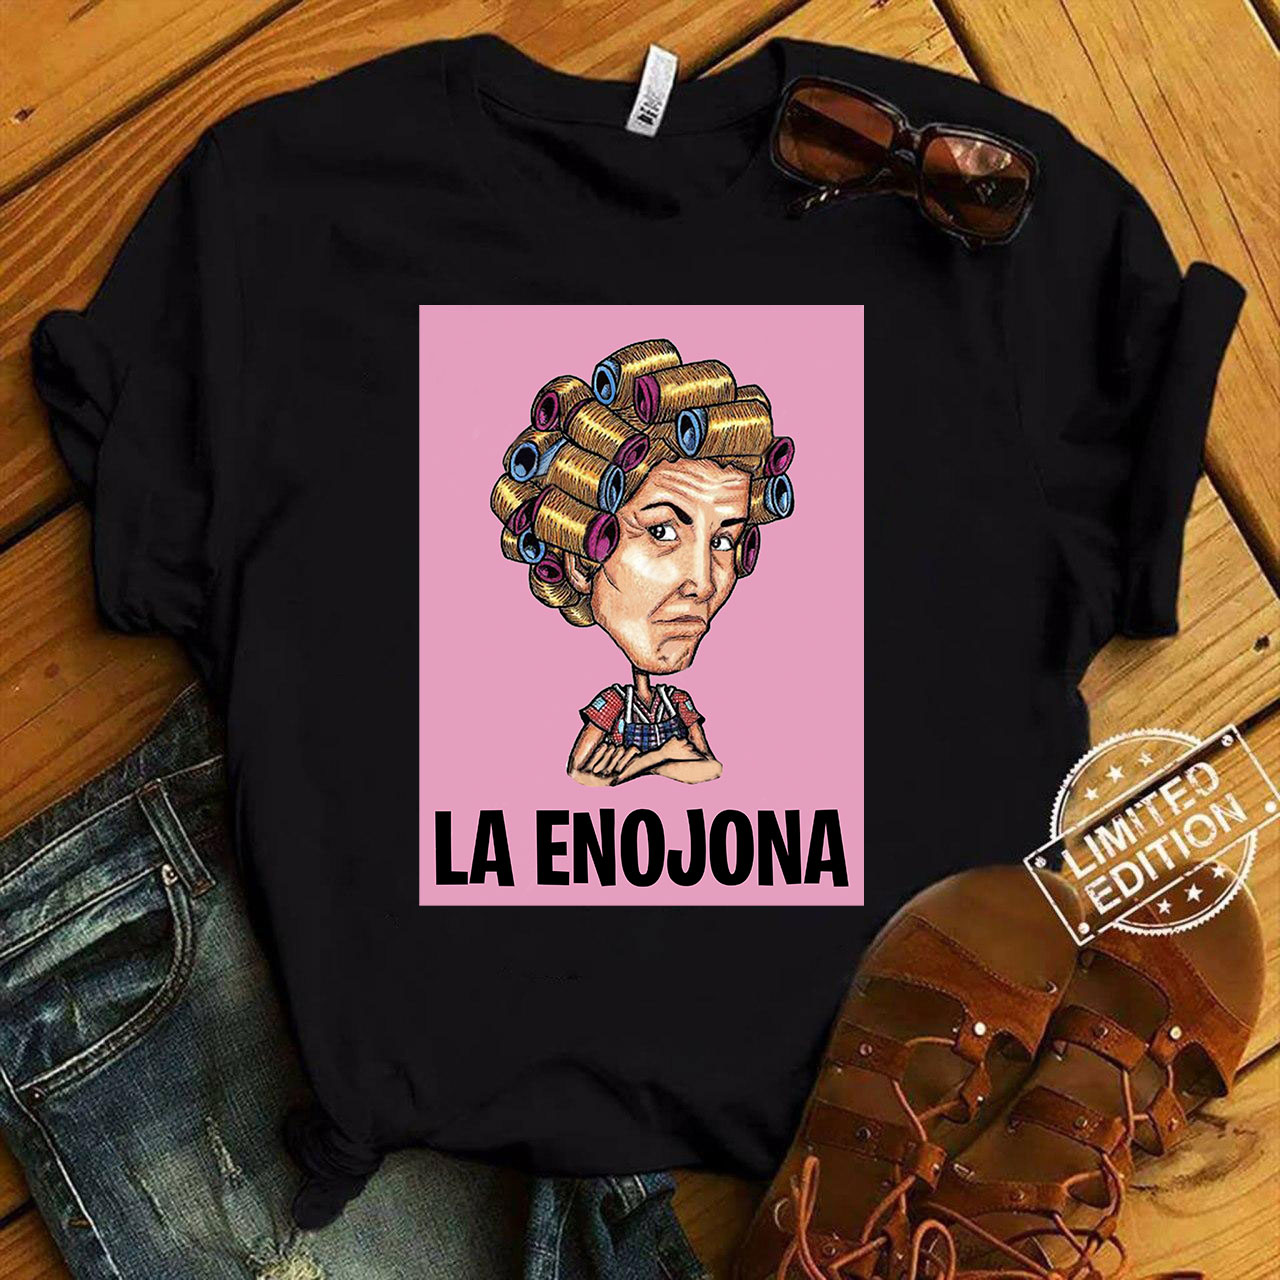 La Enojona - Old woman